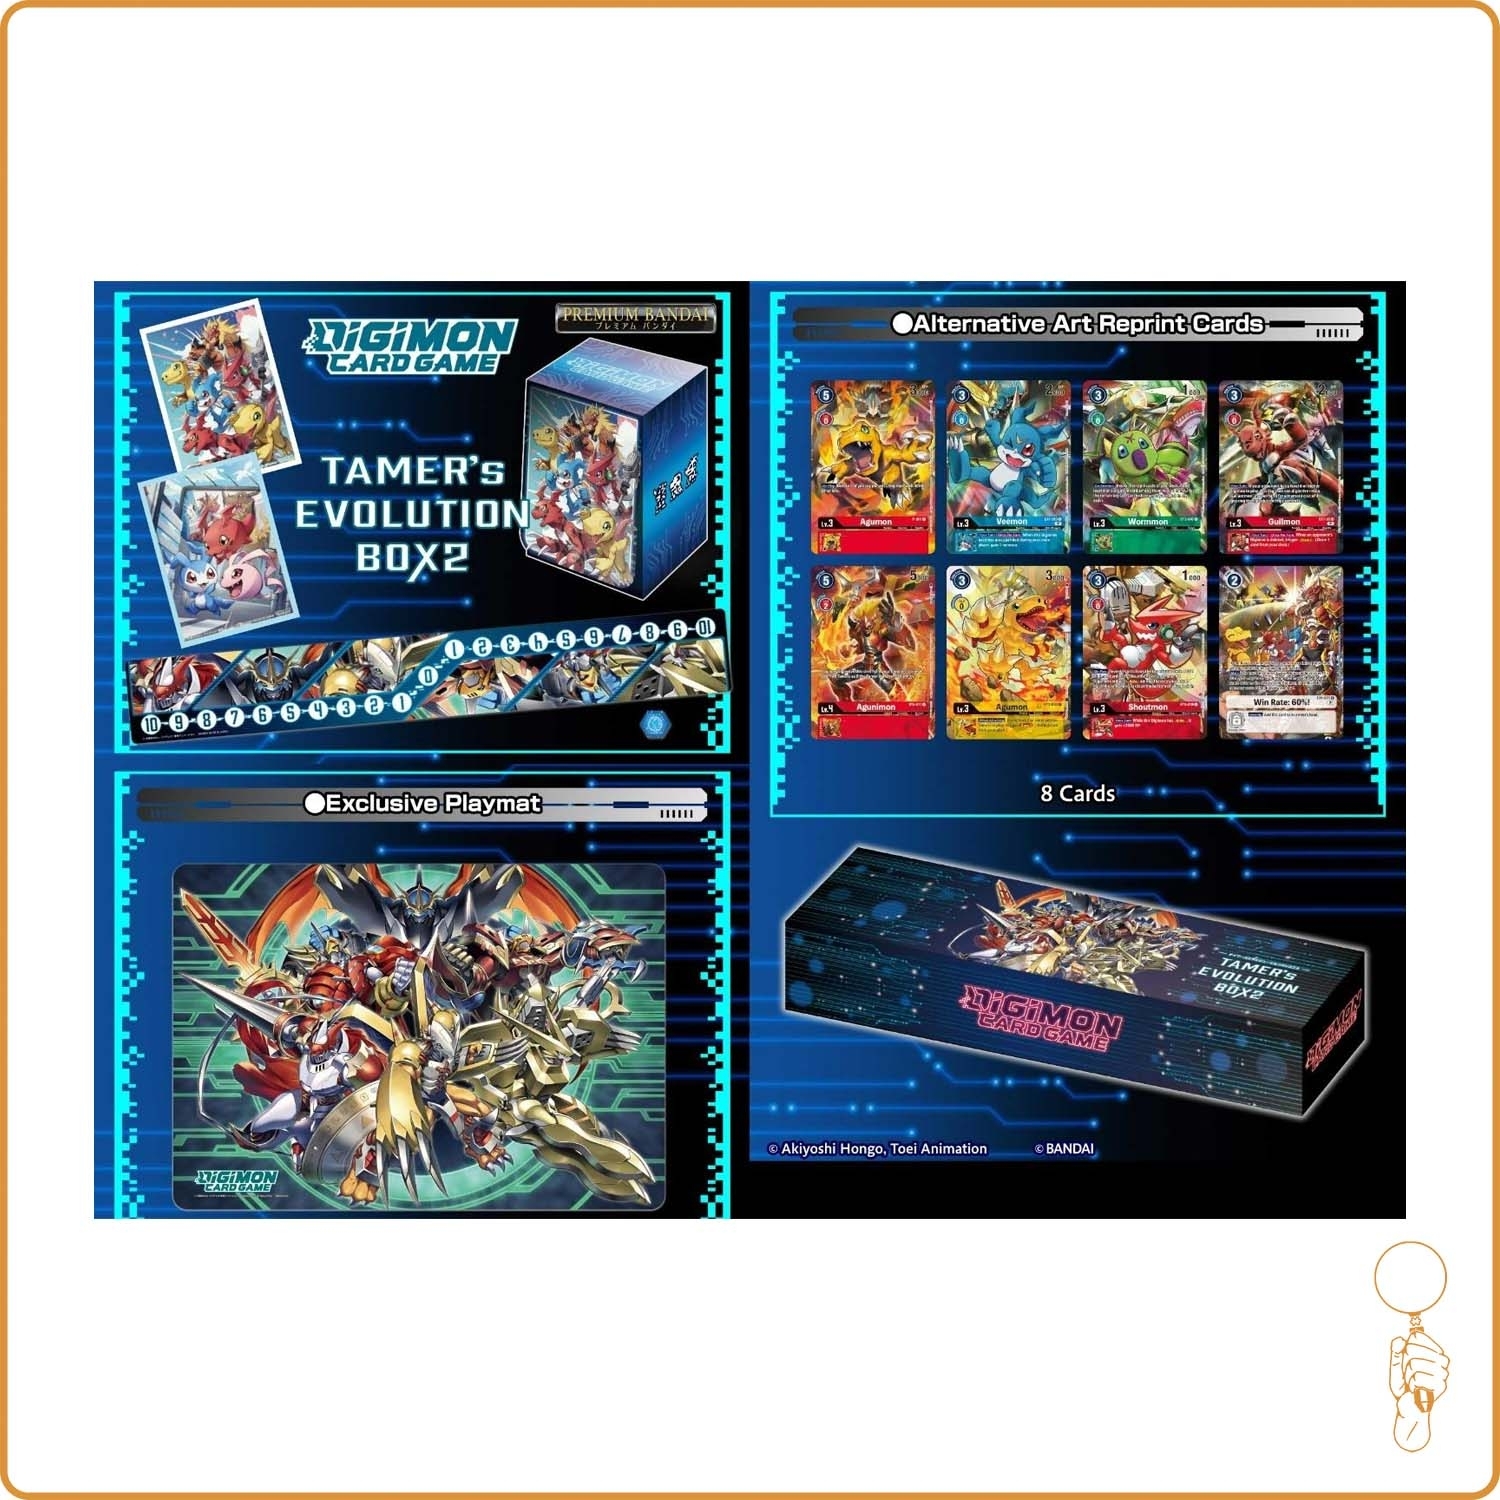 Set Exclusif - Digimon Card Game - Tamer's Evolution Box 2 - PB06 - Scellé - Anglais Bandai - 1